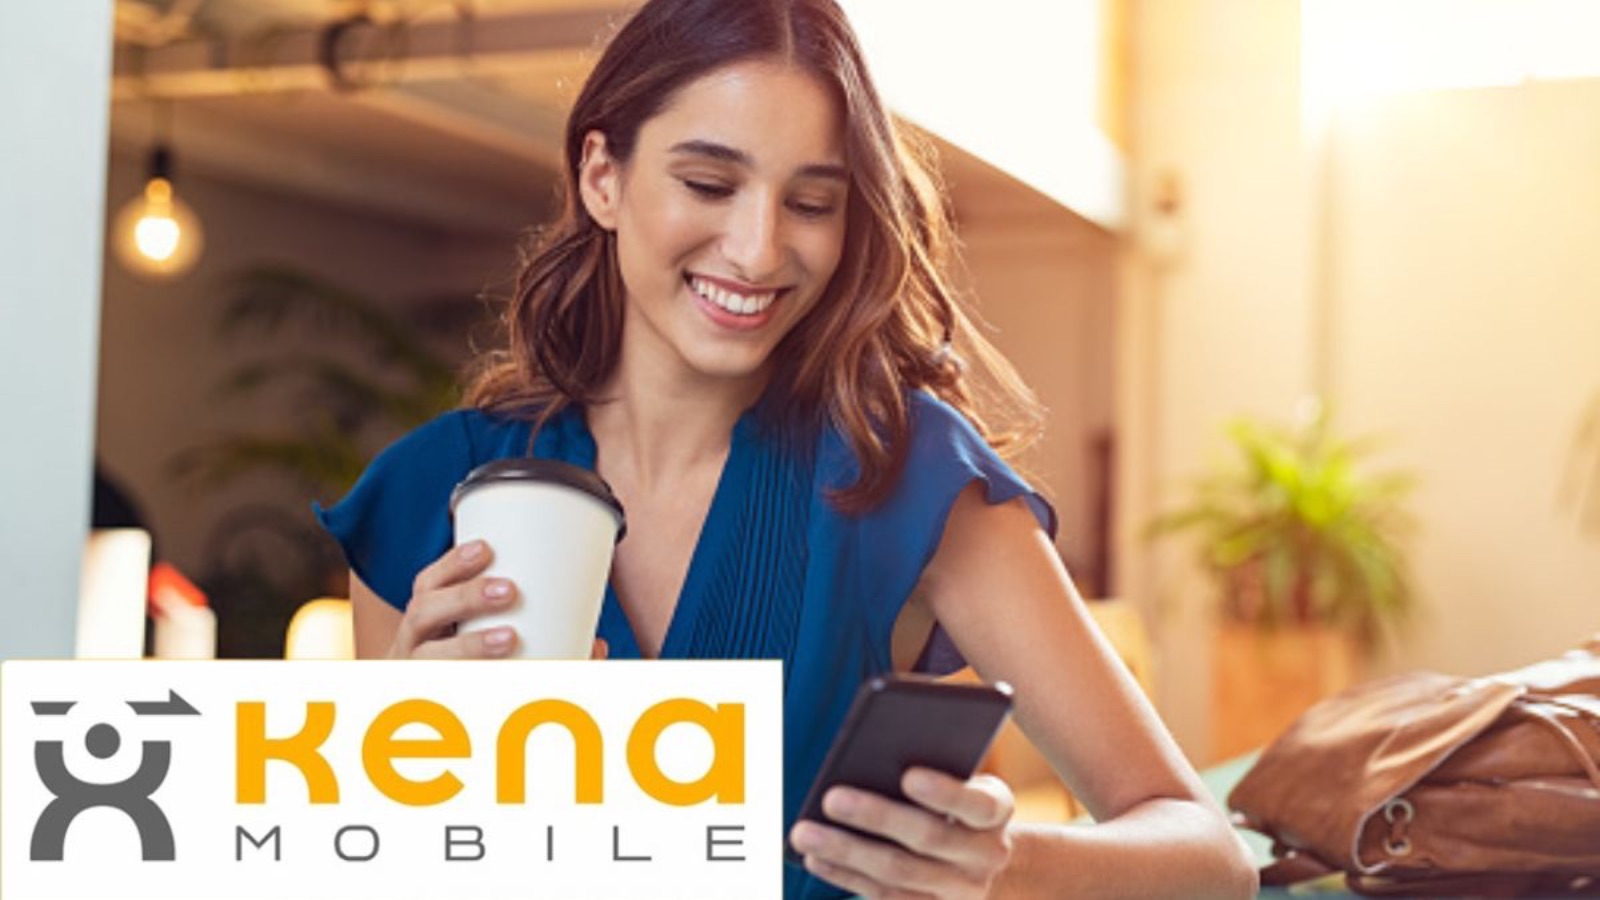 Kena Mobile, la promo da 5 EURO è ancora disponibile con 100 GIGA